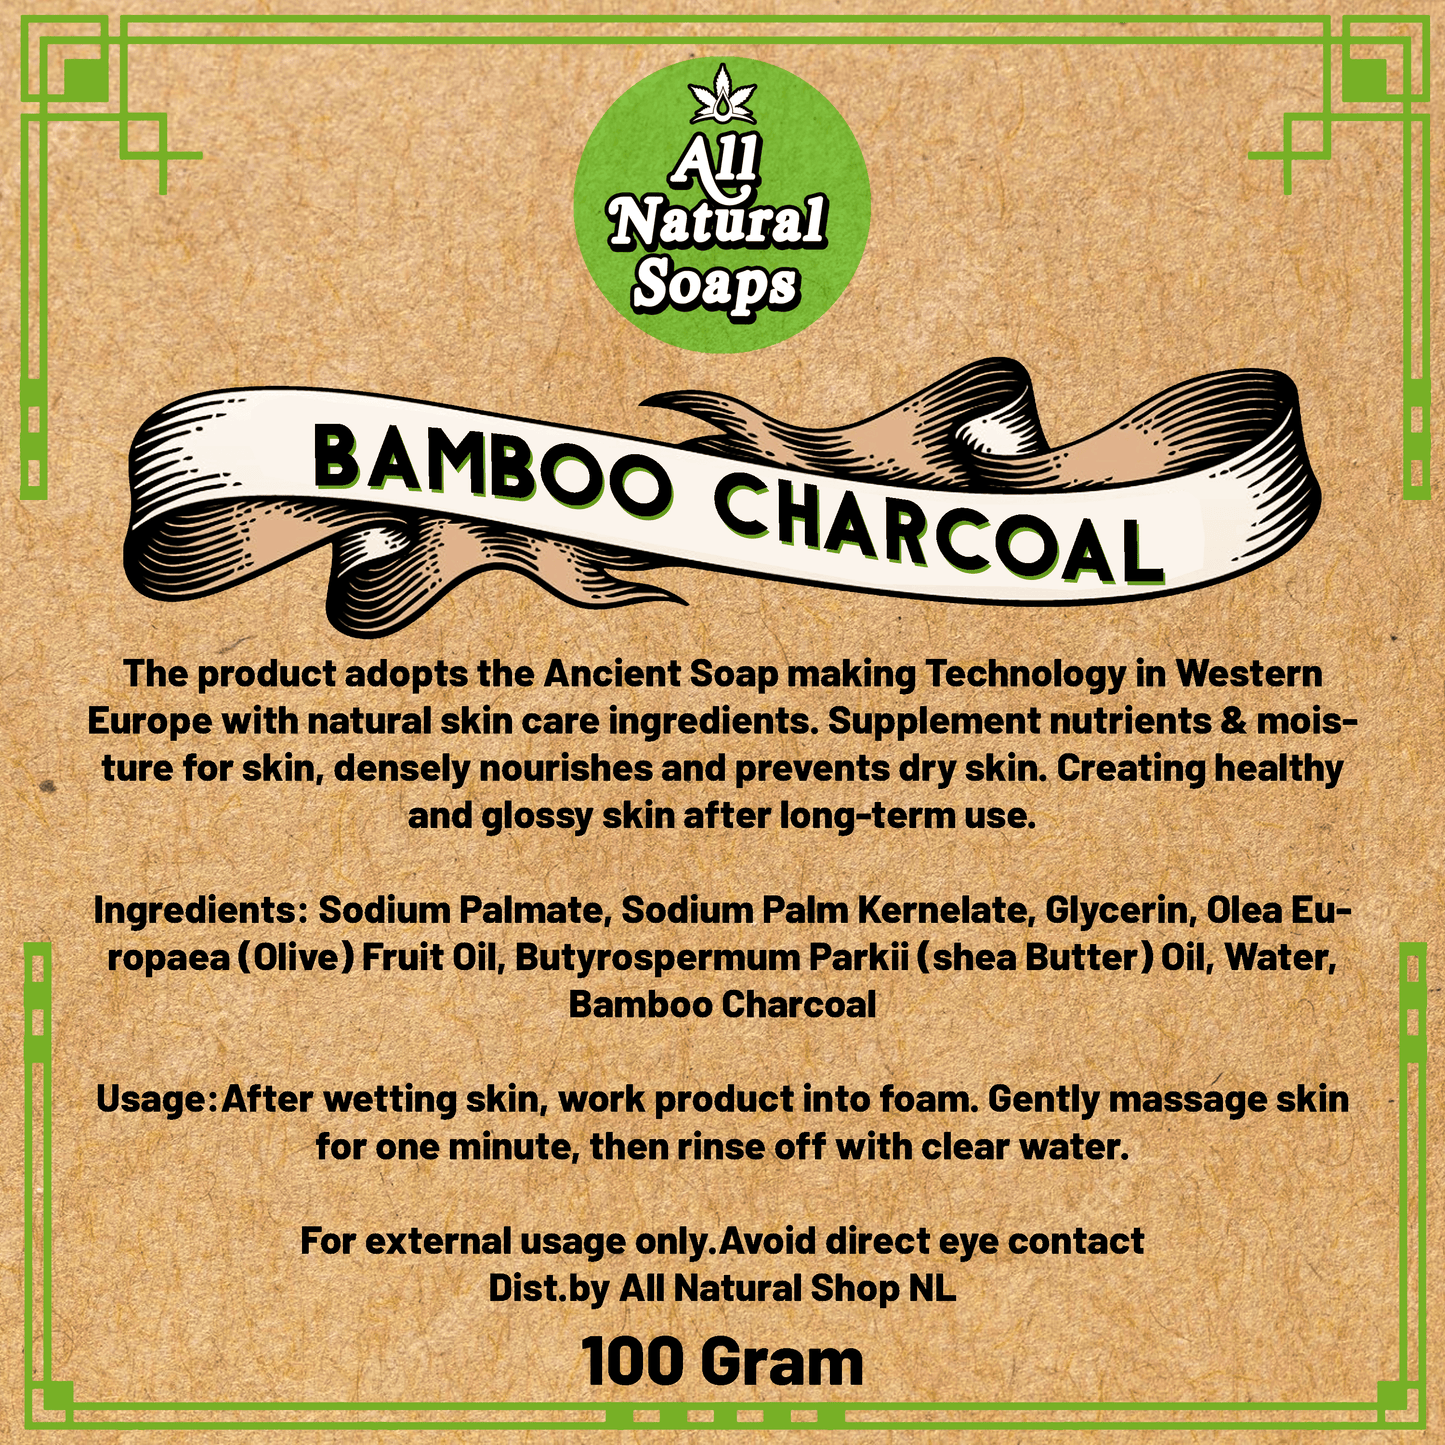 Natural Soap - Bamboo Charcoal - All Natural Soaps